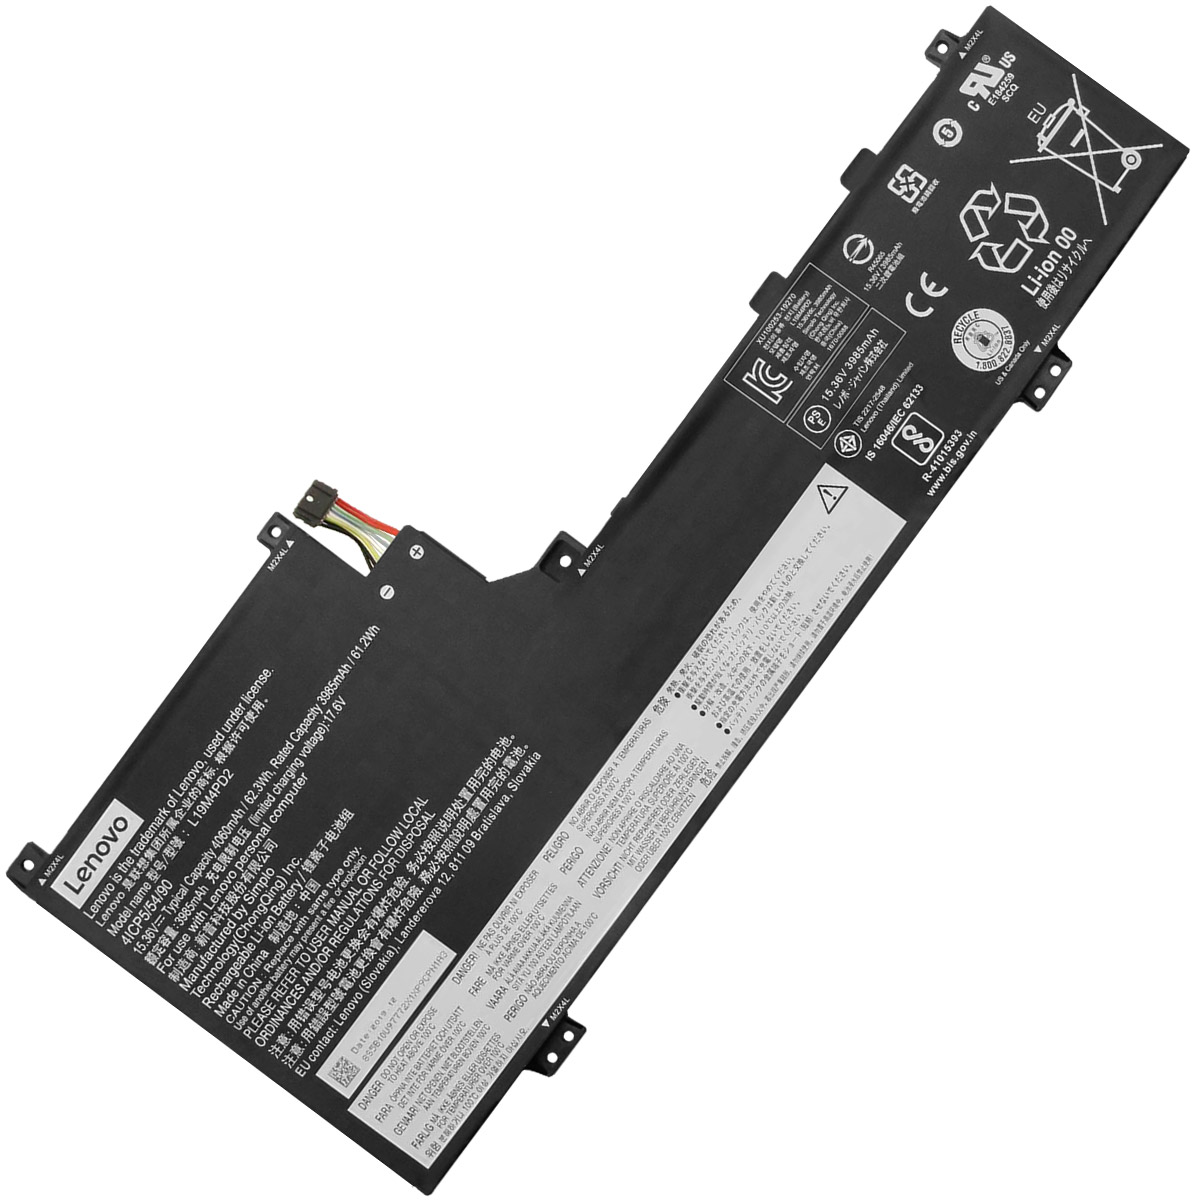 LENOVO-S740-14/L19M4PD2/L19L4PD2-Laptop Replacement Battery